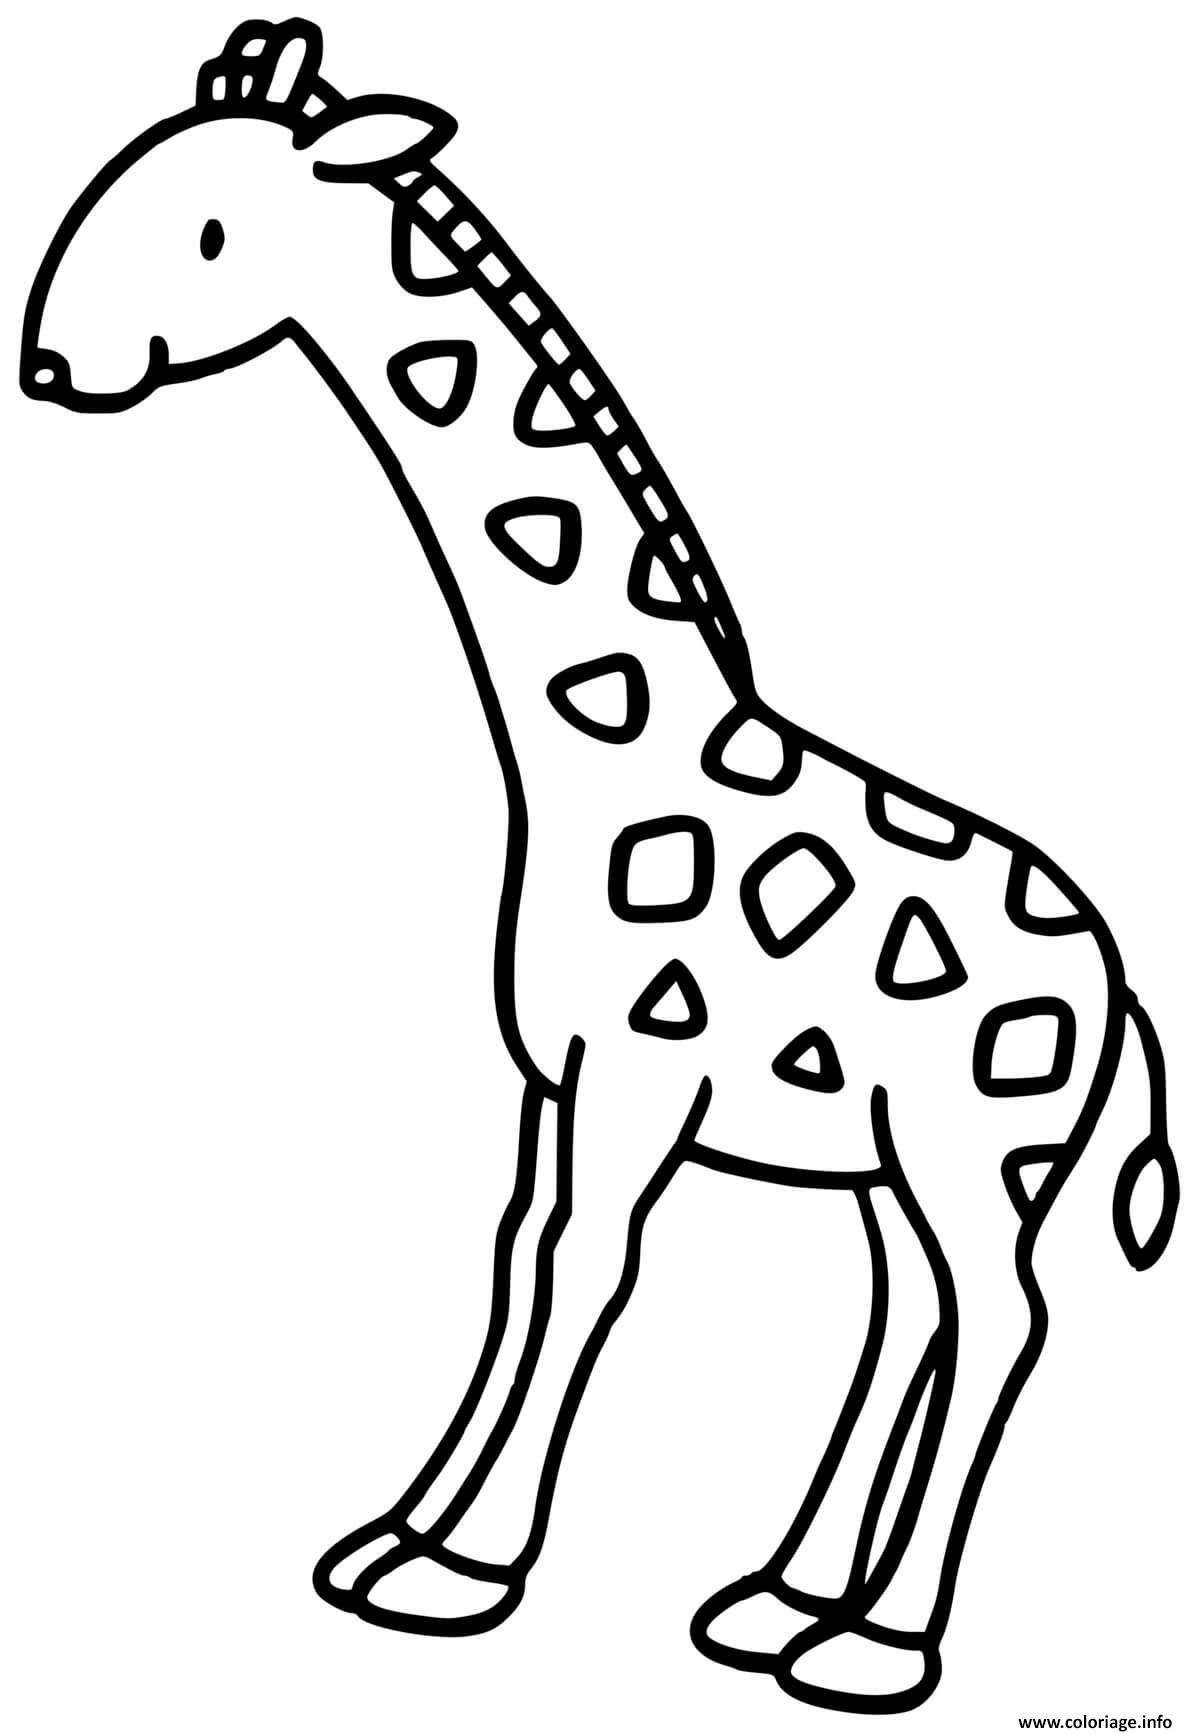 Coloriage La Girafe Dessin Girafe À Imprimer à Coloriage La Joconde Dessin